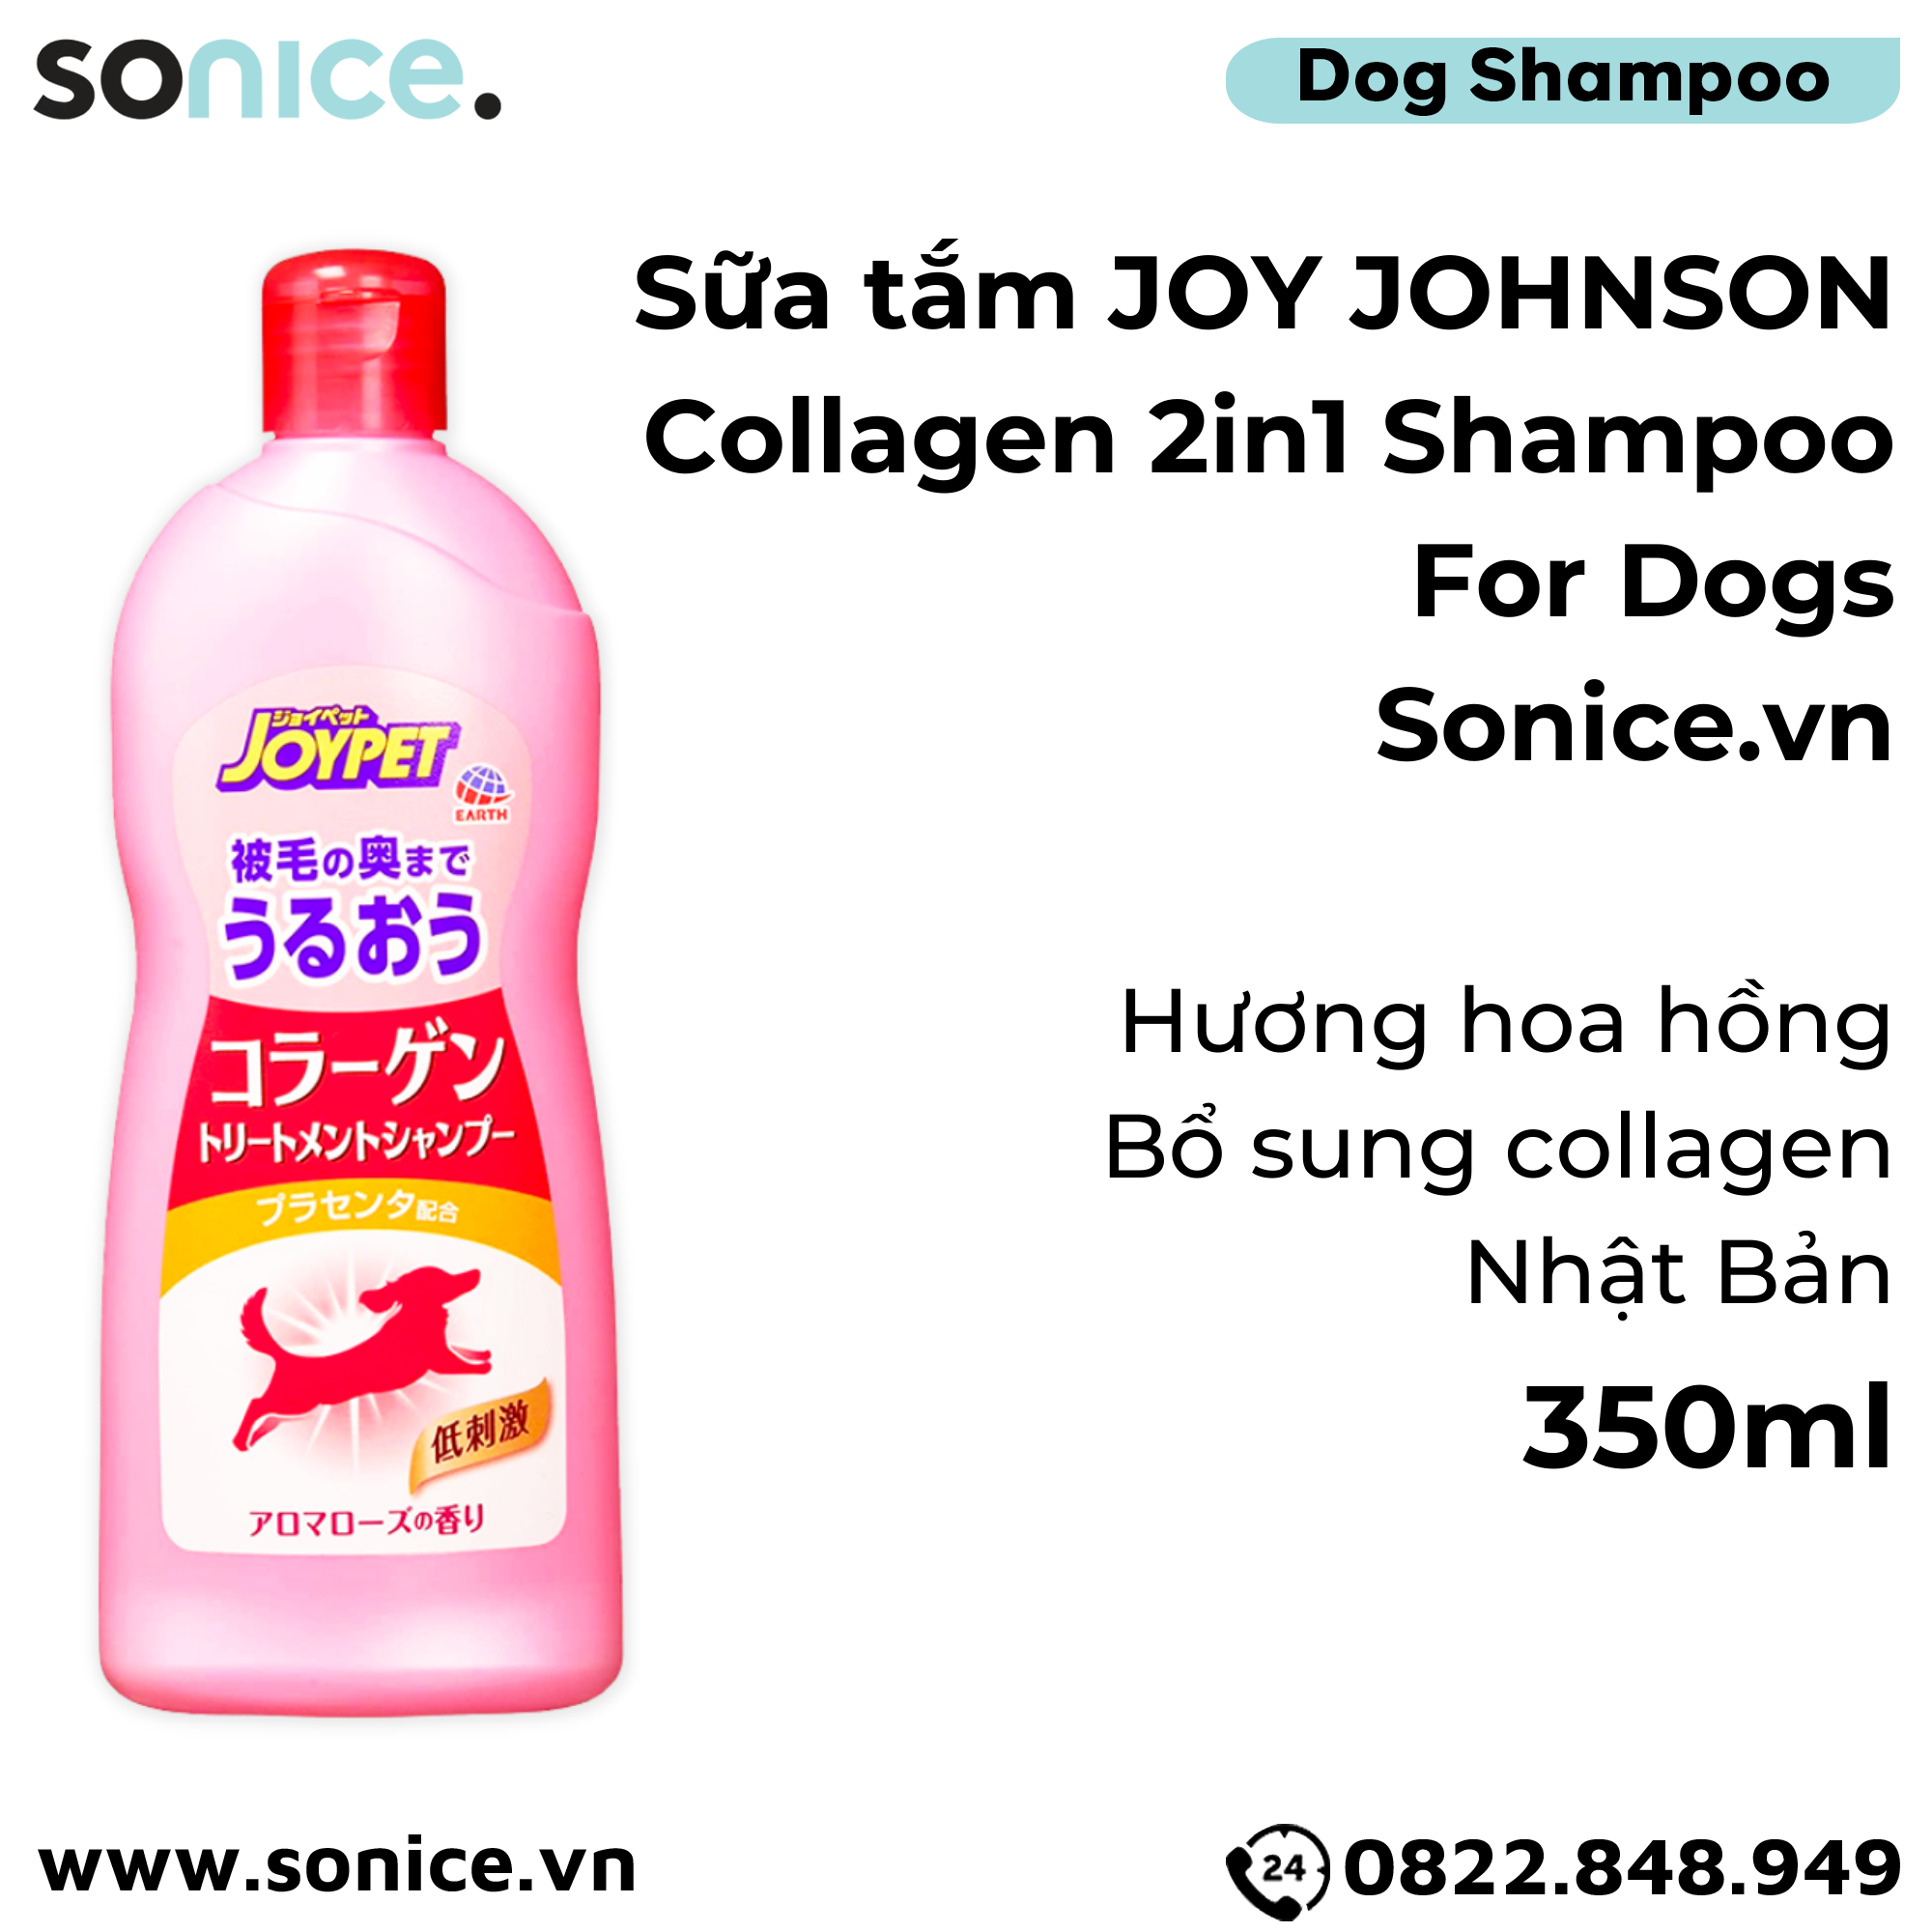  Sữa tắm Joy Johnson Colagen 2in1 Shampoo for Dogs 350ml - Hương hoa hồng, bổ sung Colagen, Nhật Bản - SONICE. 